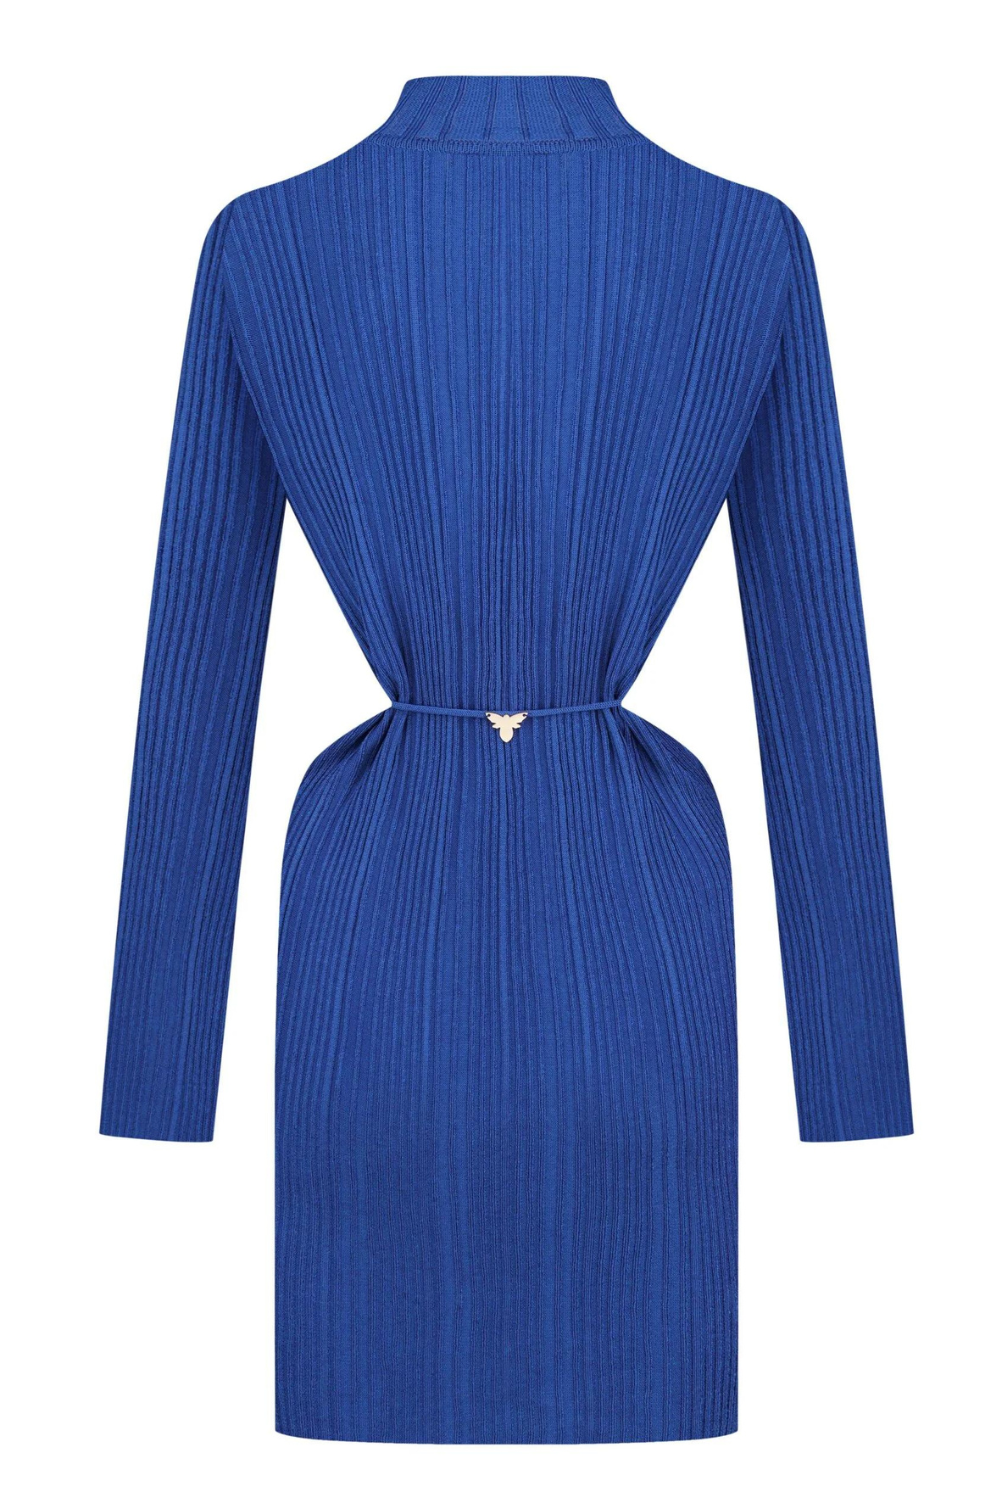 Pletené šaty tmavě modrá (K.KVIT, T.MOSCA) PDJ23-03